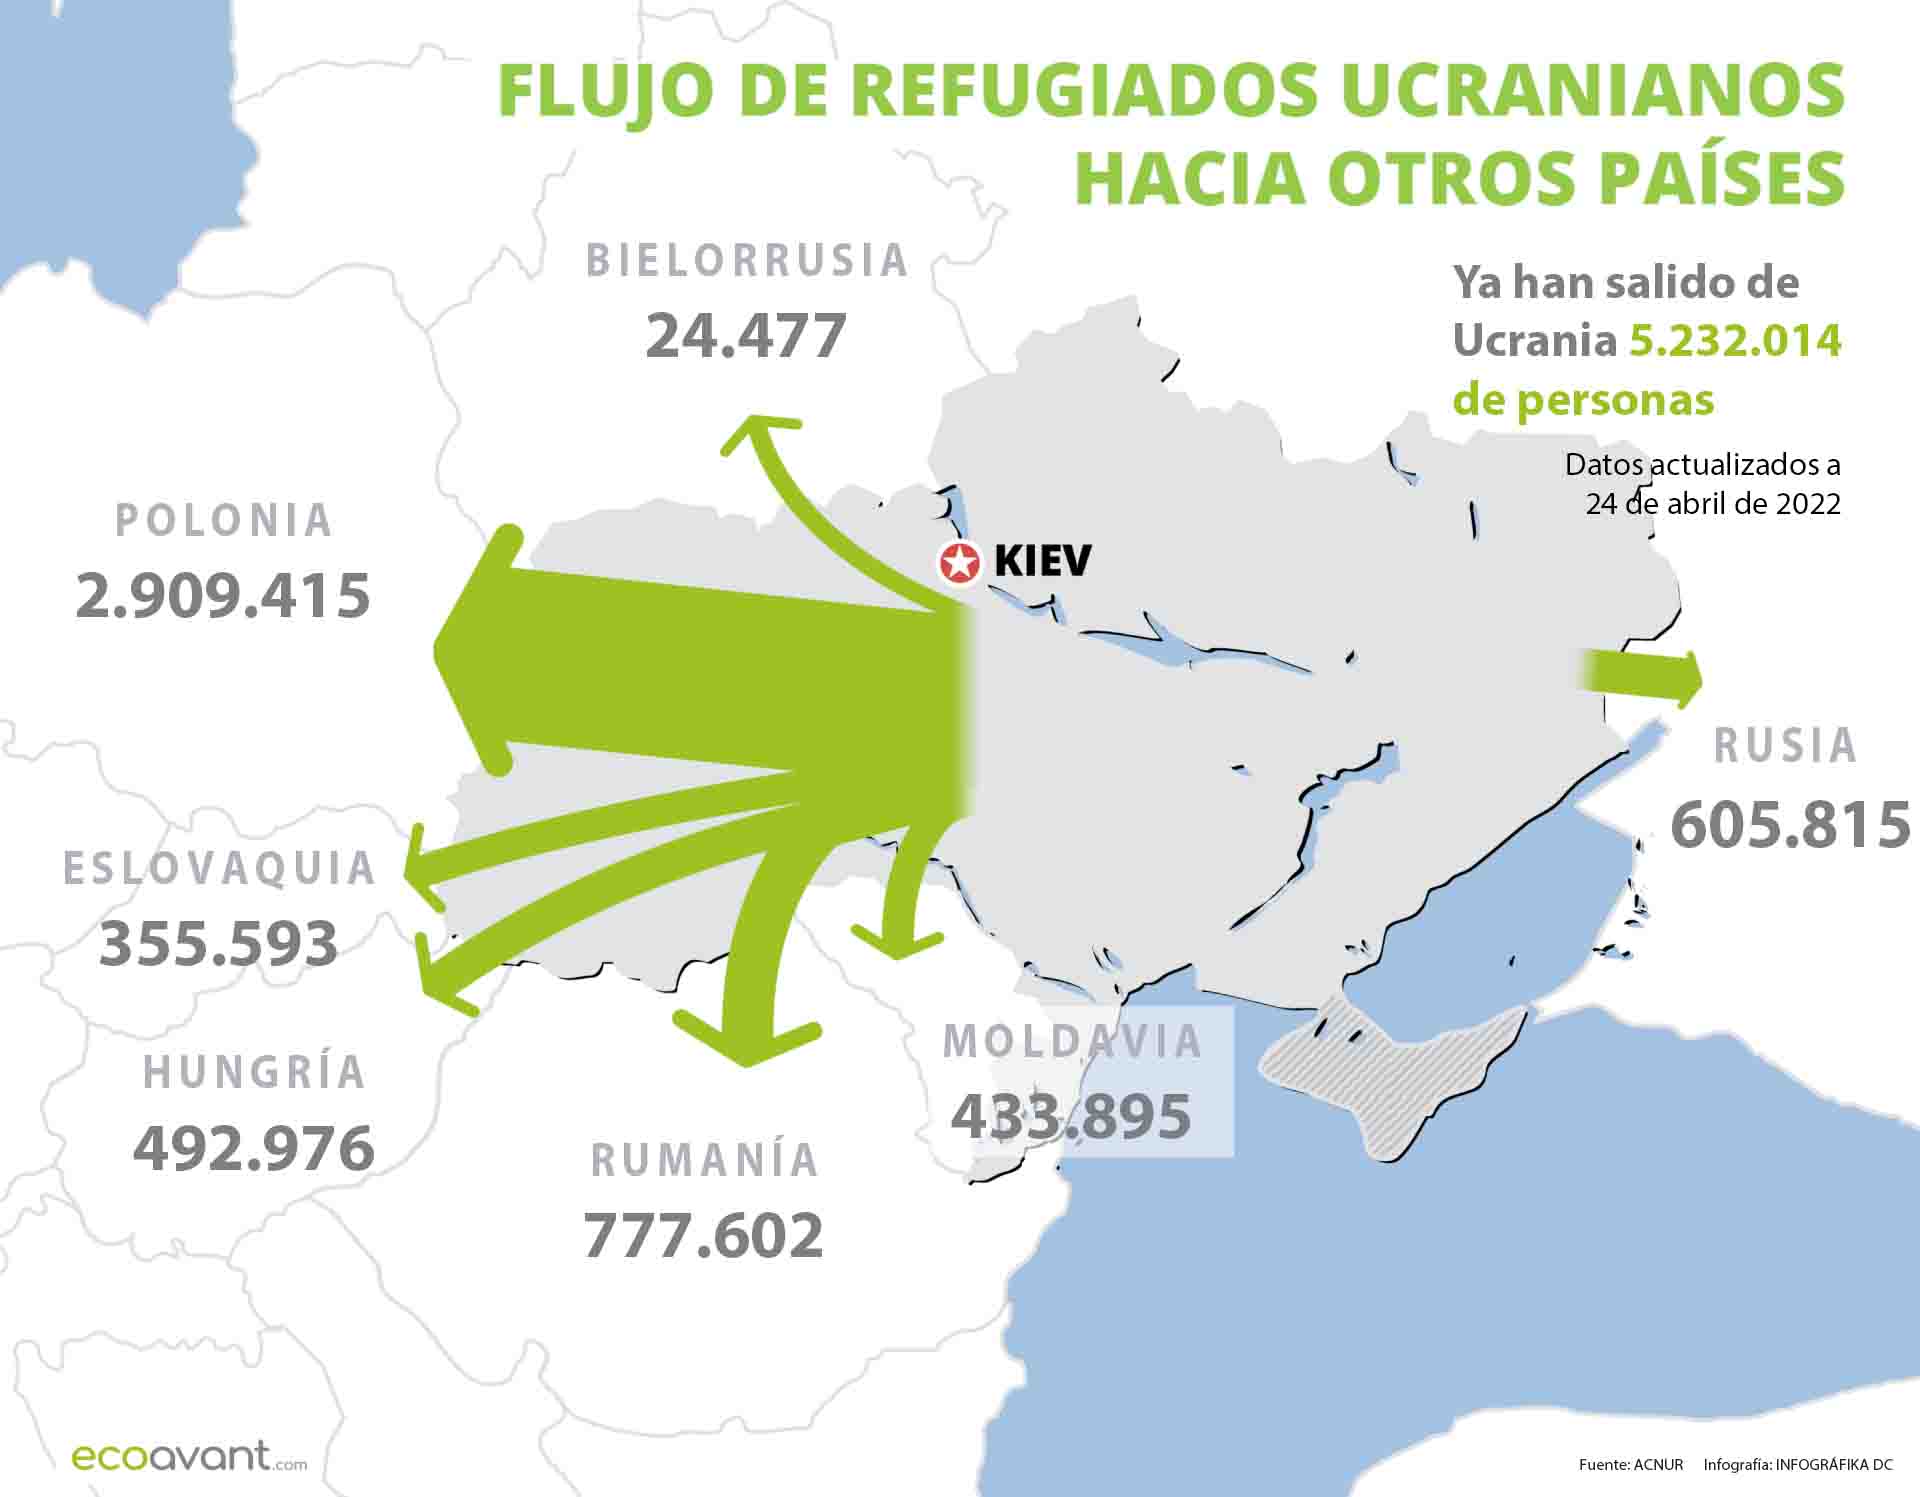 Flujo de refugiados de Ucrania hacia otros países a 24 de abril de 2022 / Images: EA